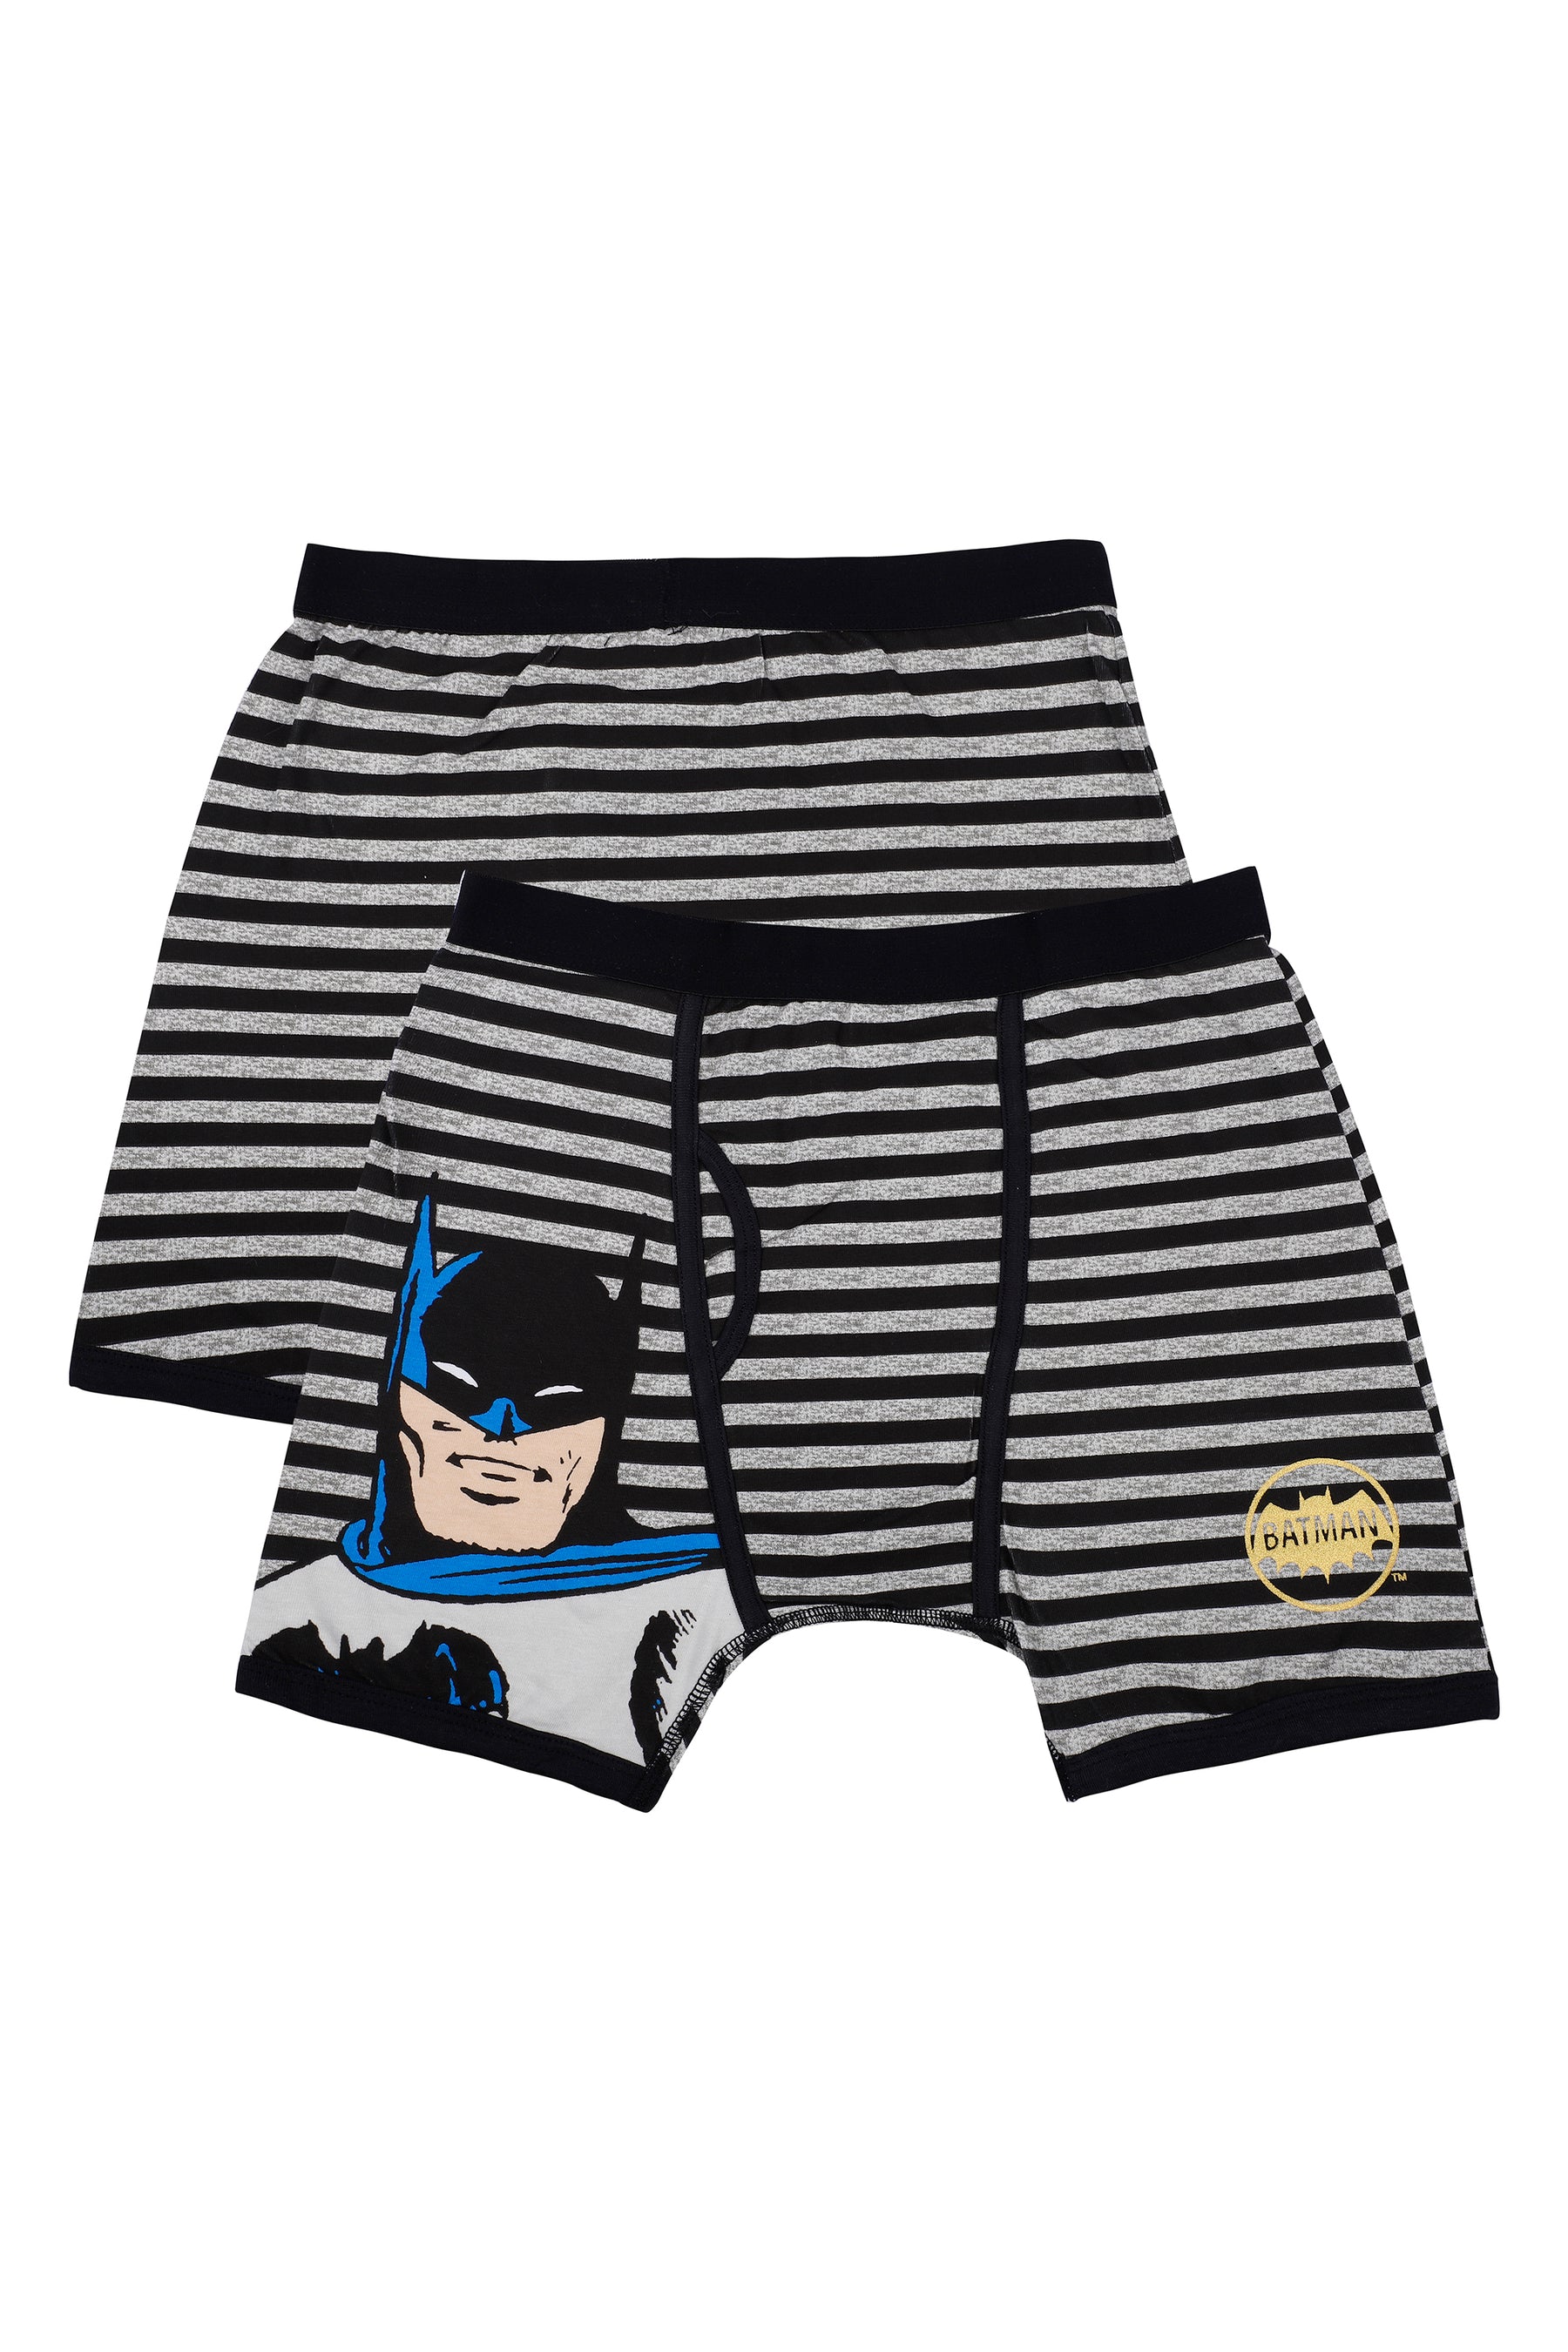 Batman Logo Boxer Shorts Underpants - Official Merchandise